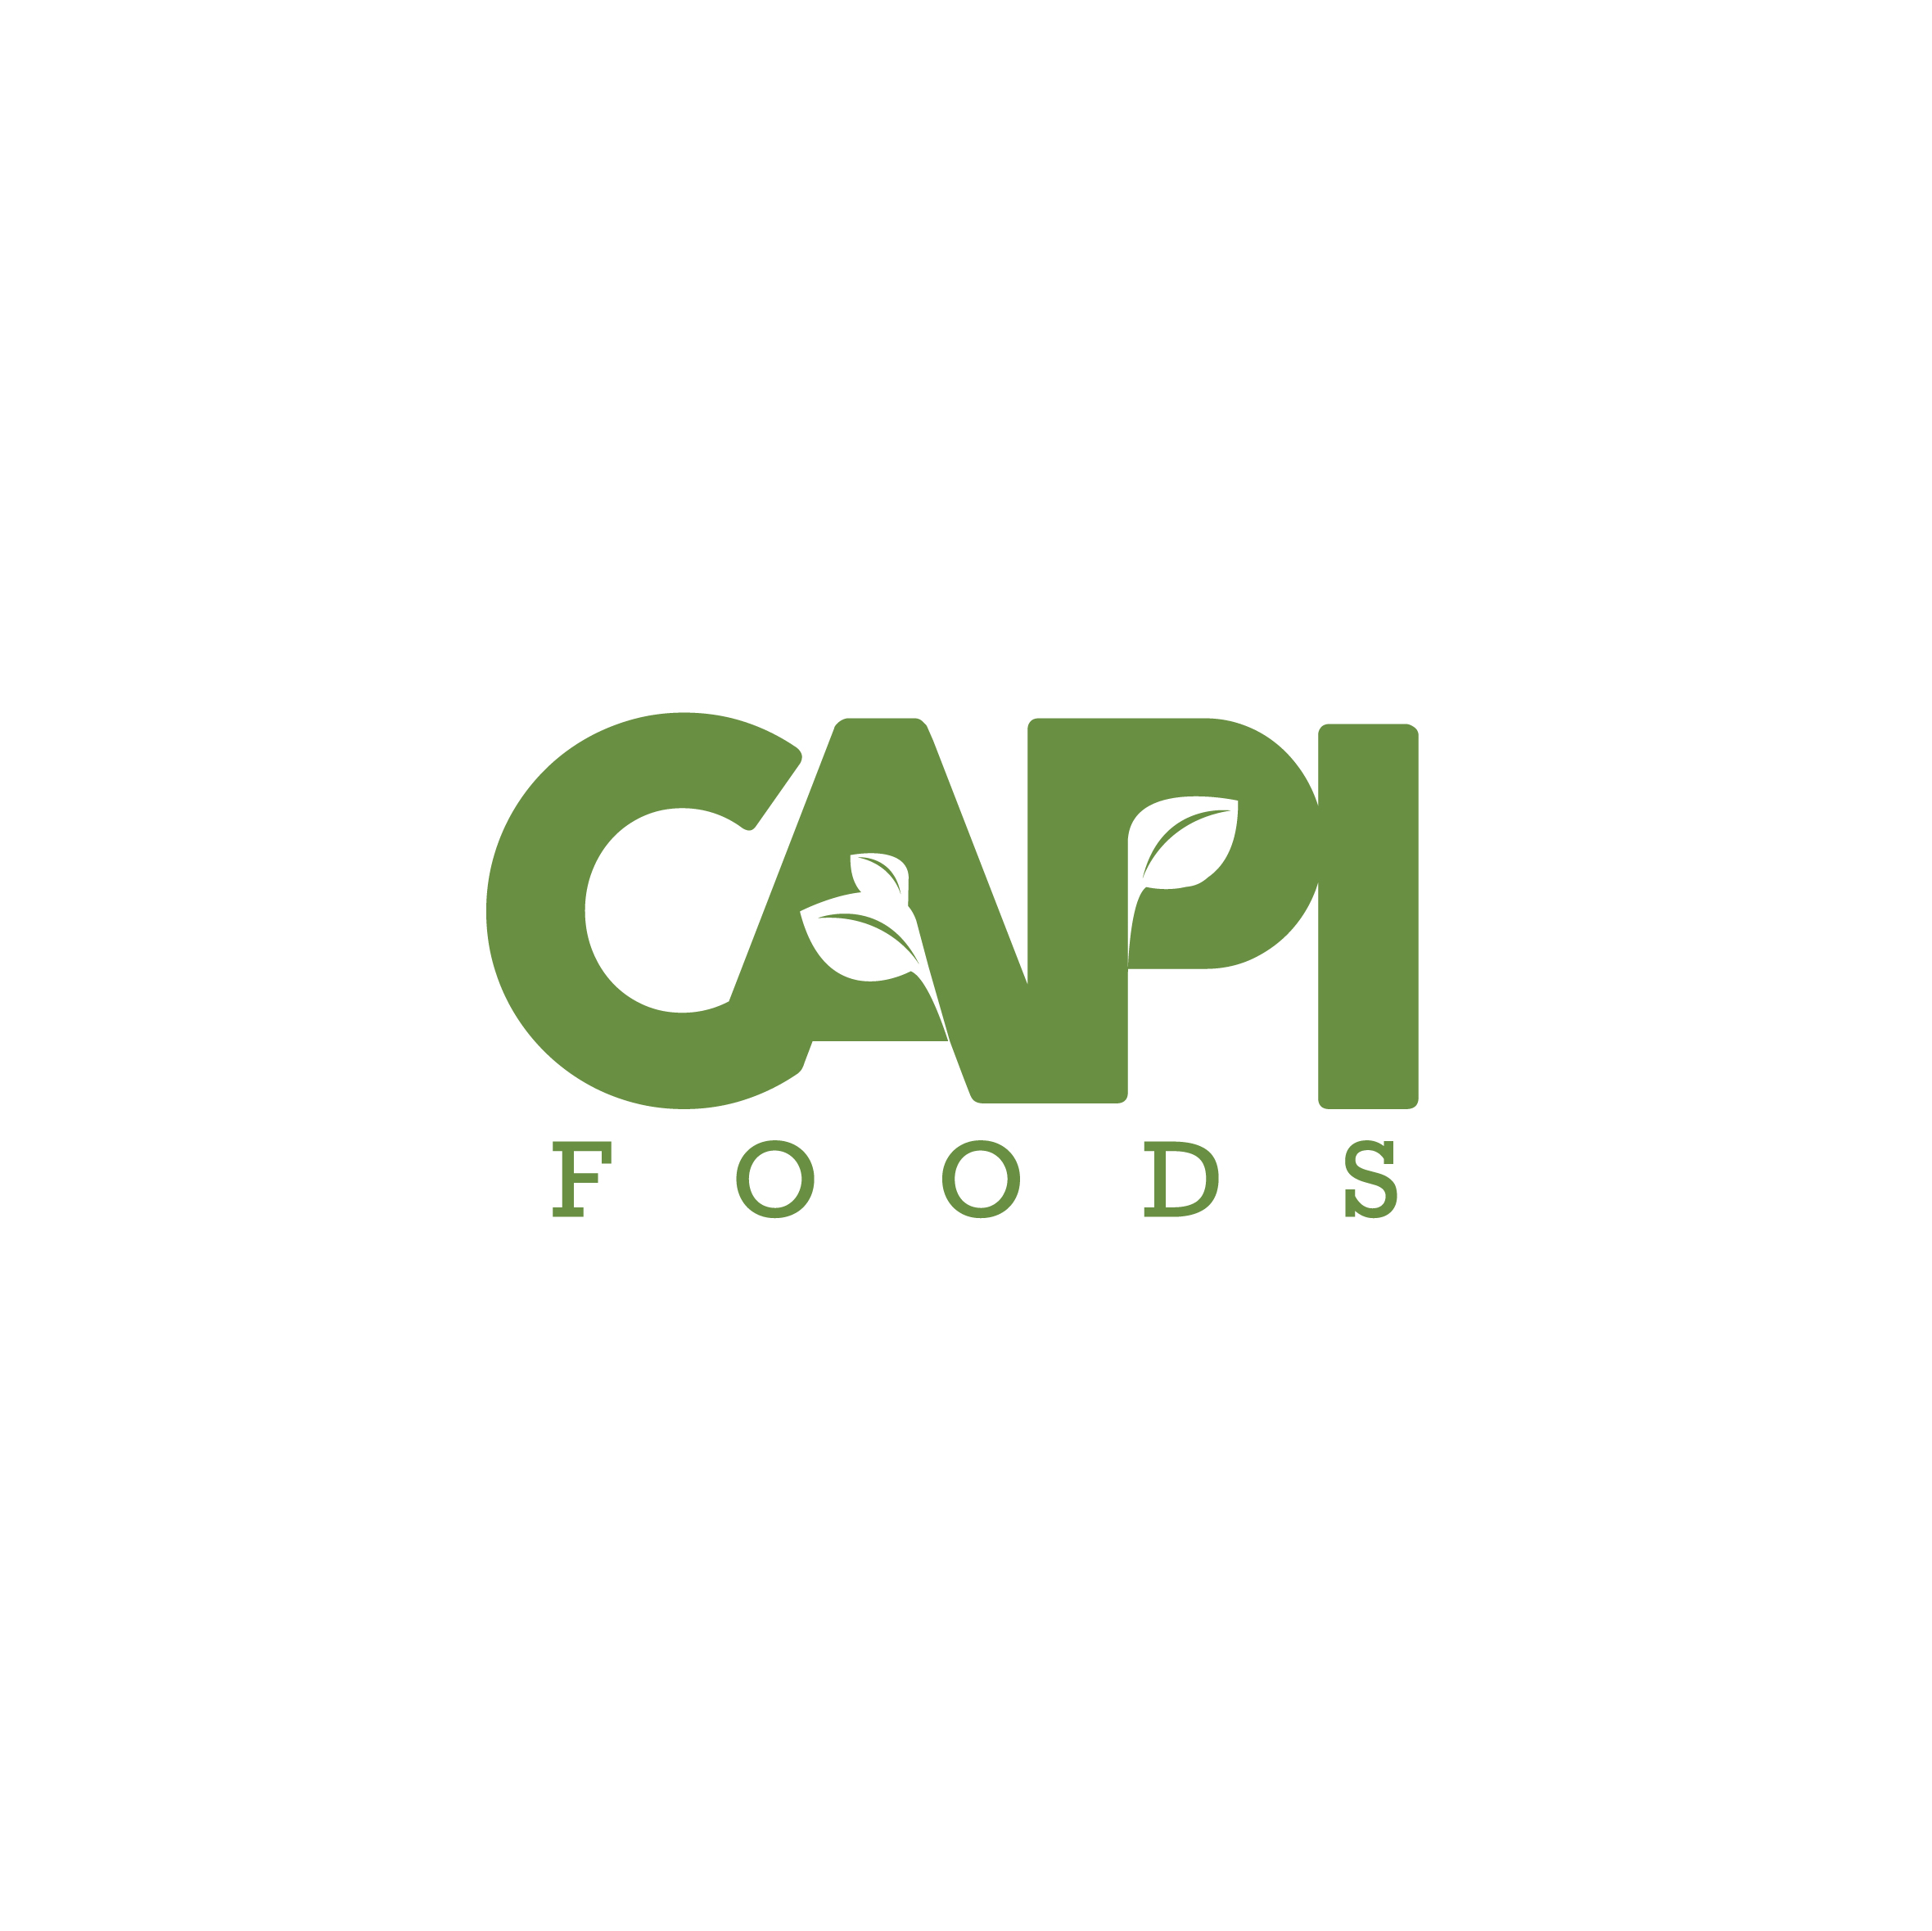 022_CAPI Foods